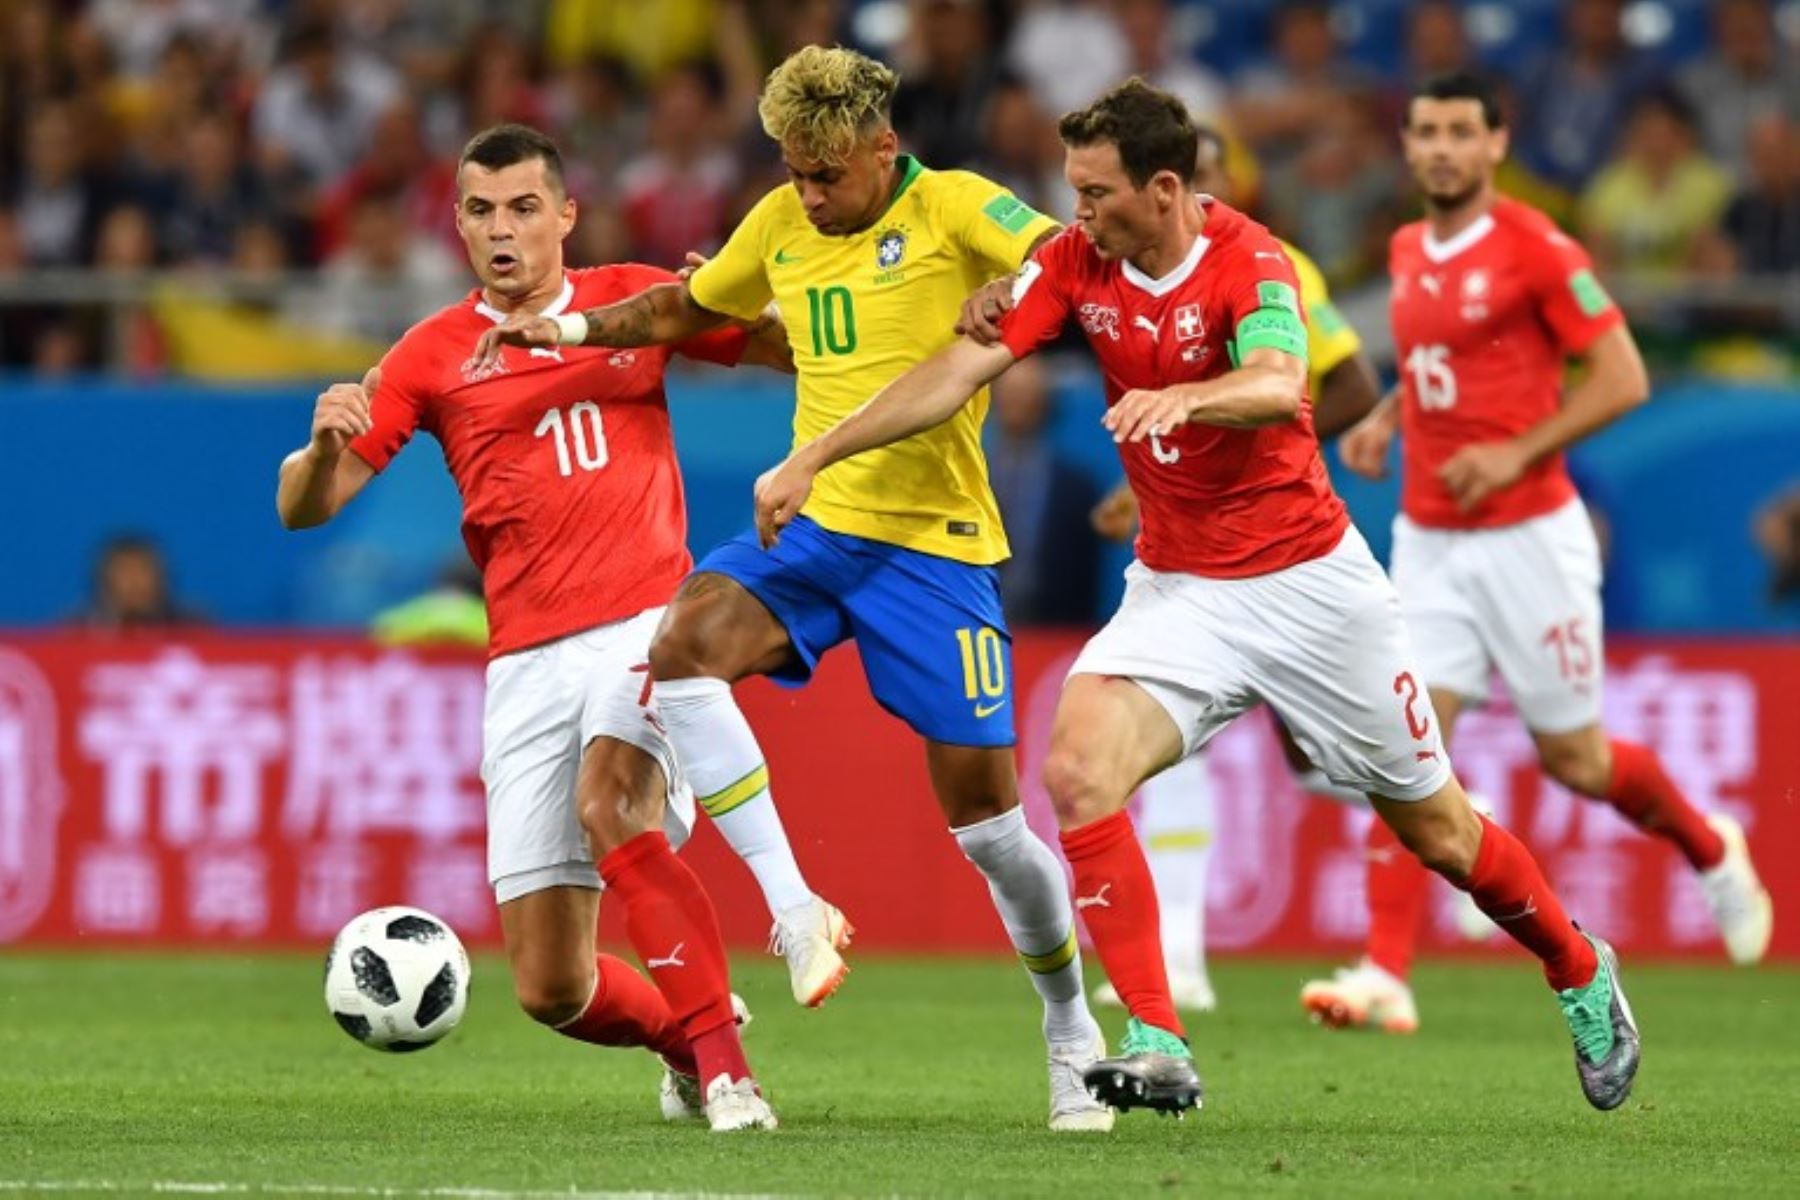 El centrocampista suizo Granit Xhaka,  el delantero brasileño Neymar y el defensor suizo Stephan Lichtsteiner compiten por el balón durante el partido de fútbol del Grupo E de la Copa Mundial Rusia 2018.FotoAFP